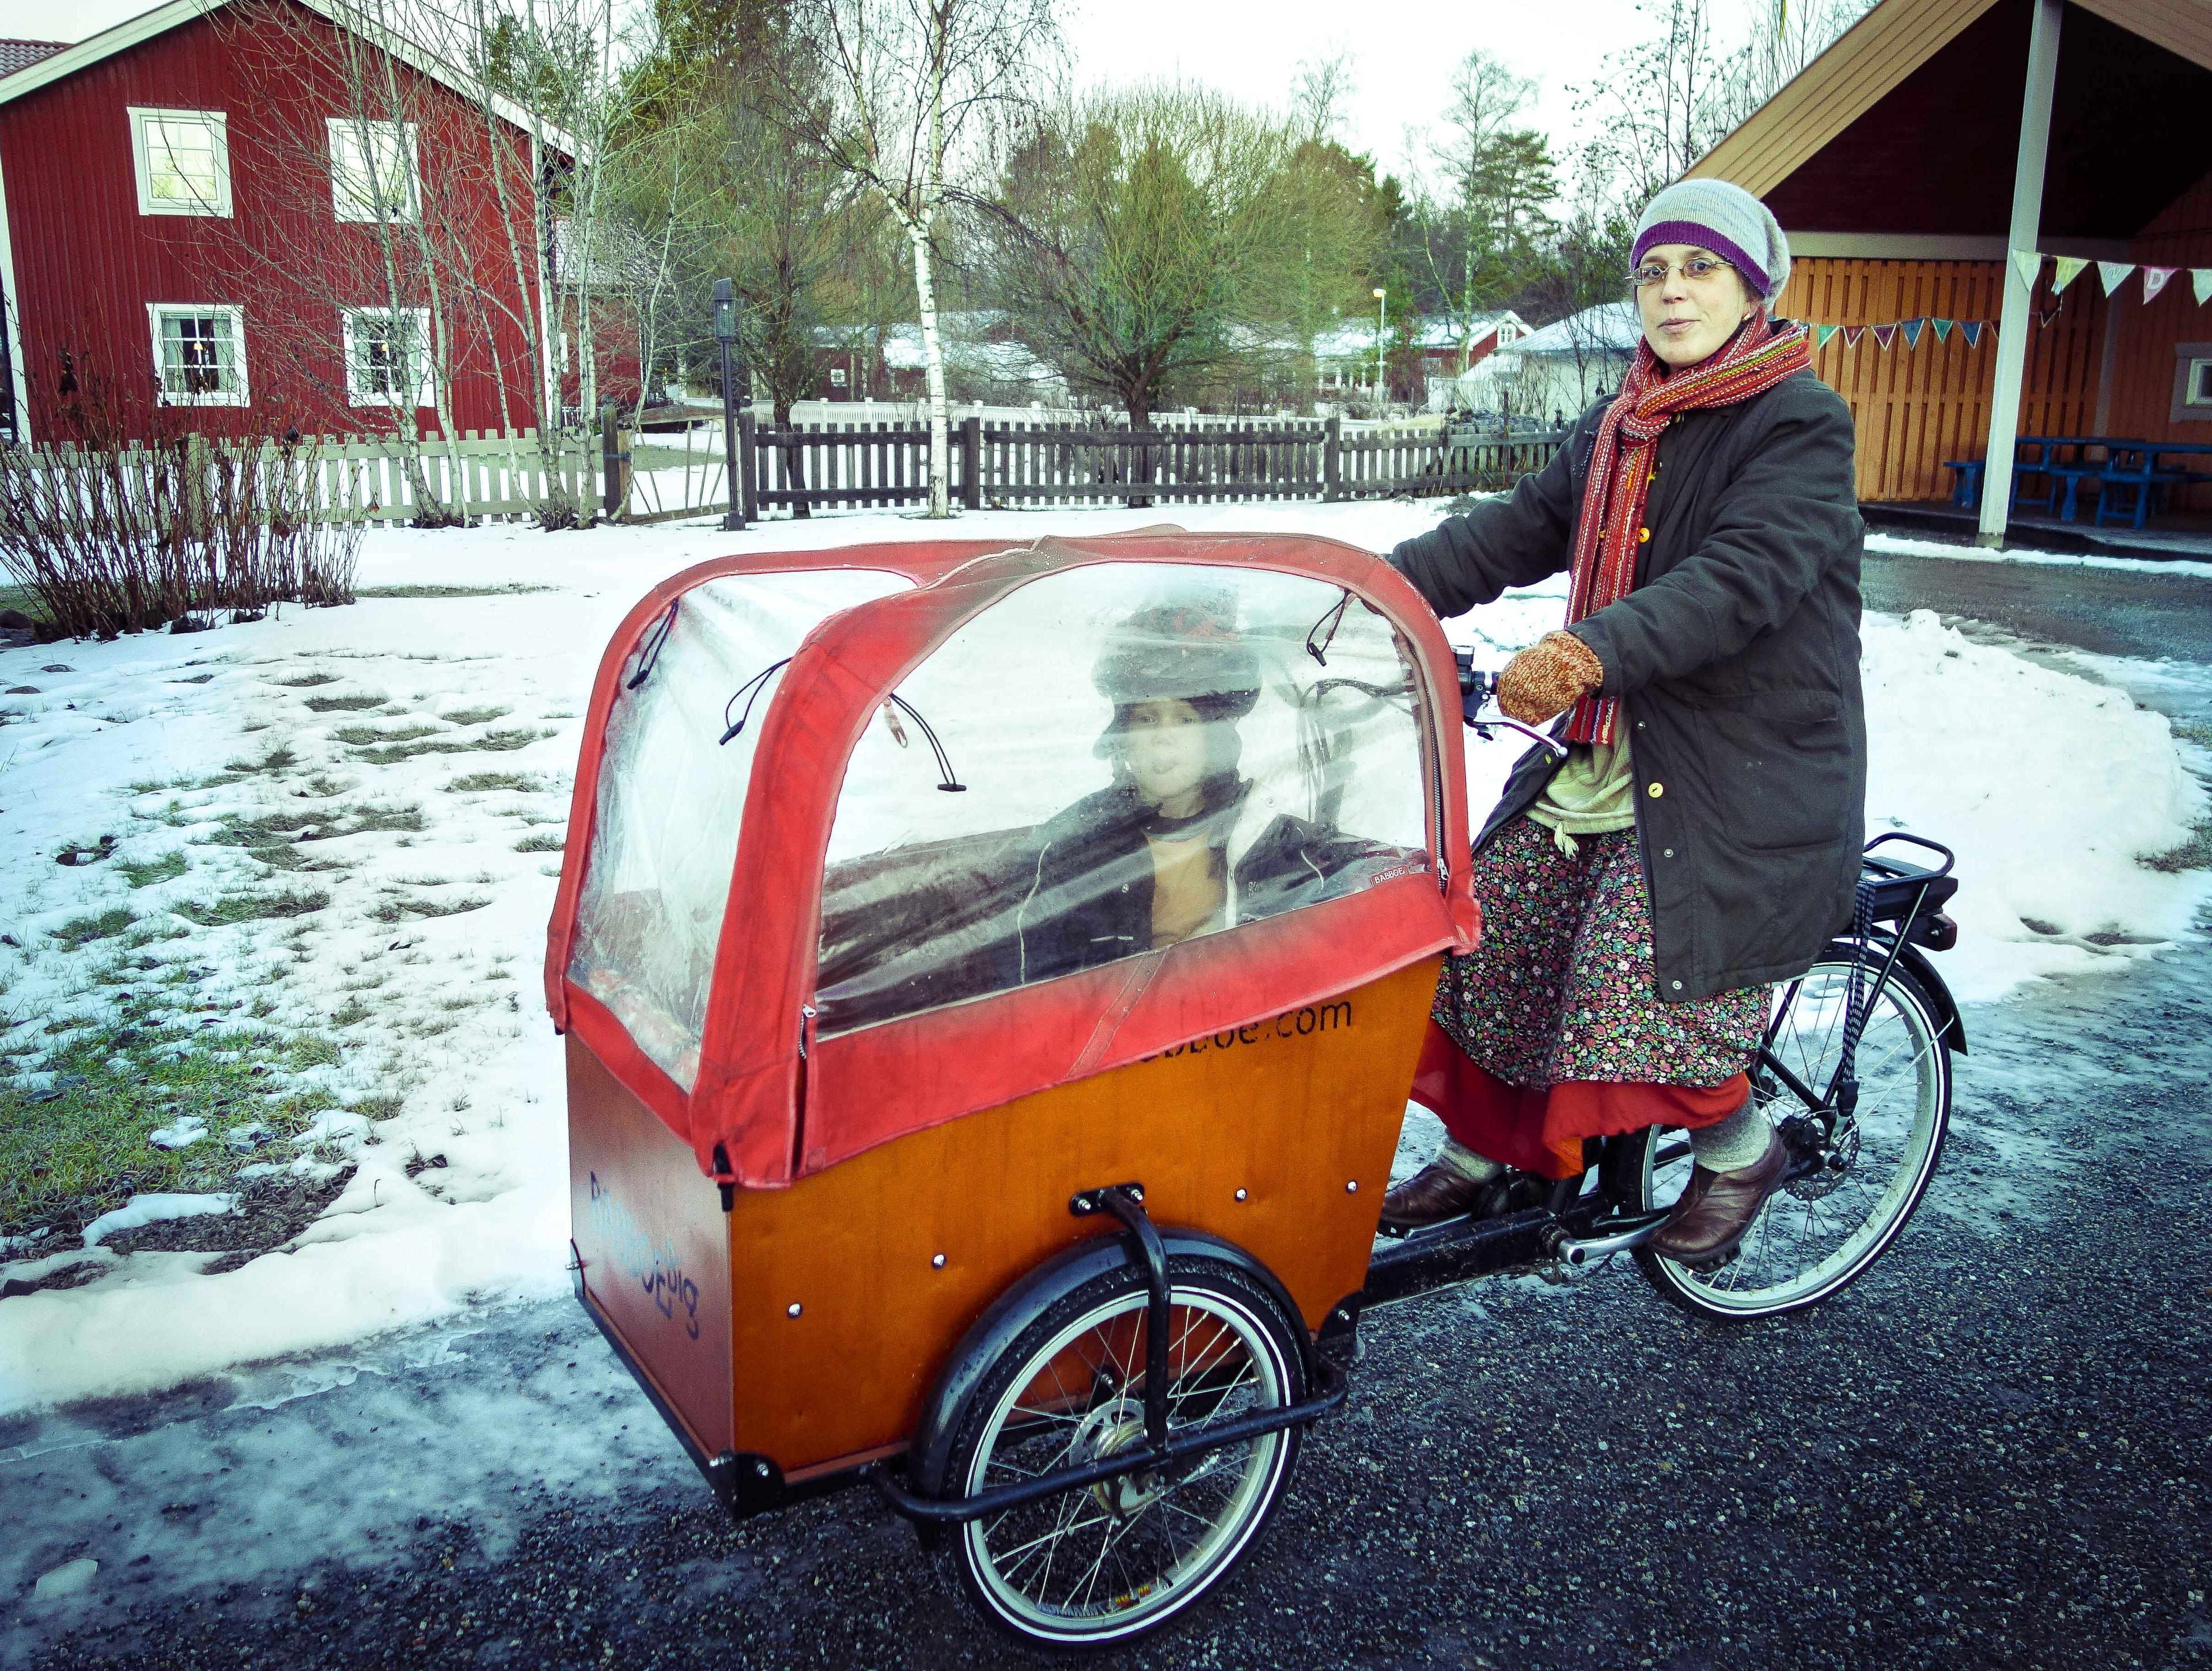 Lådcykel istället för bil, en vanligare syn i framtiden? Den här lådcykeln har plats för tre barn och är en variant som har en liten elmotor till hjälp. Hushållens utsläpp av växthusgaser minskar, men en stor del utgörs av det privata bilkörandet. (Foto: Eva Sagerfors /Epoch Times Sverige)